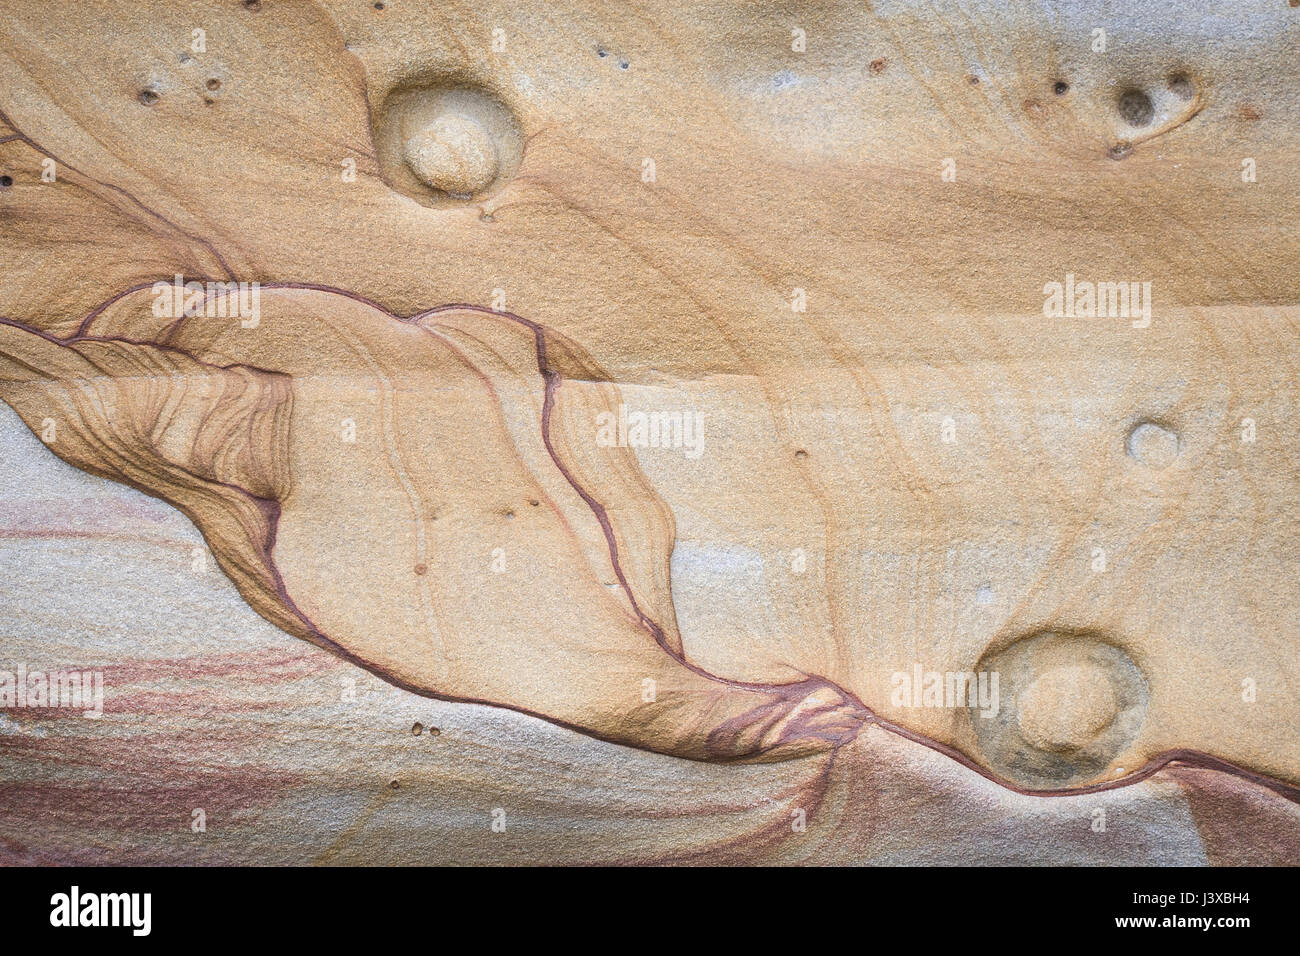 Une forme abstraite dans une falaise de grès qui ressemble à un personnage assis. Banque D'Images